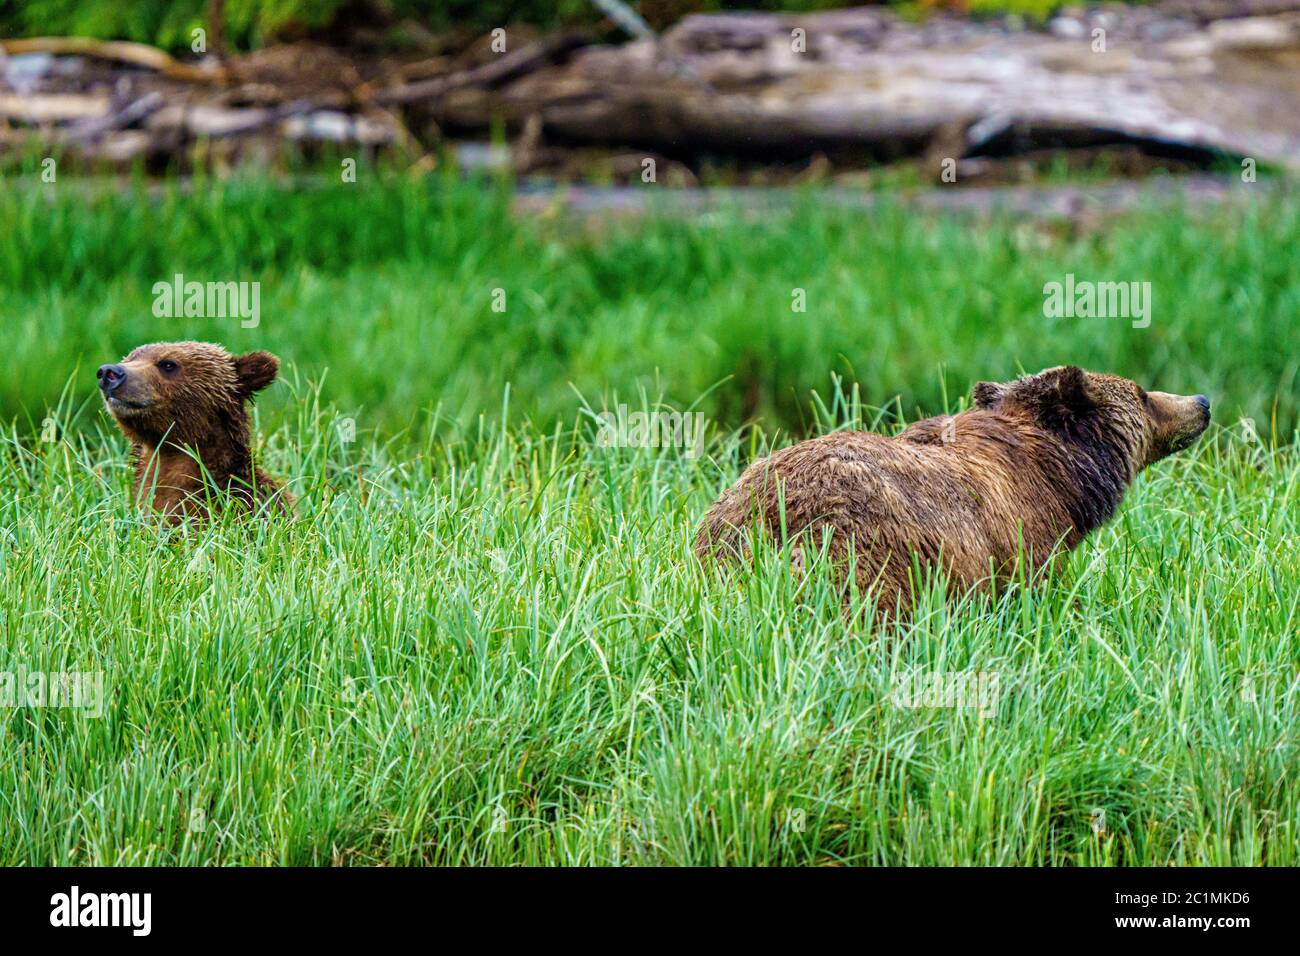 Grizzly oso mamá con el cub de alimentación en un campo de hierba de la orilla en Knight Inlet, Territorio de las primeras Naciones, Columbia Británica, Canadá. Foto de stock